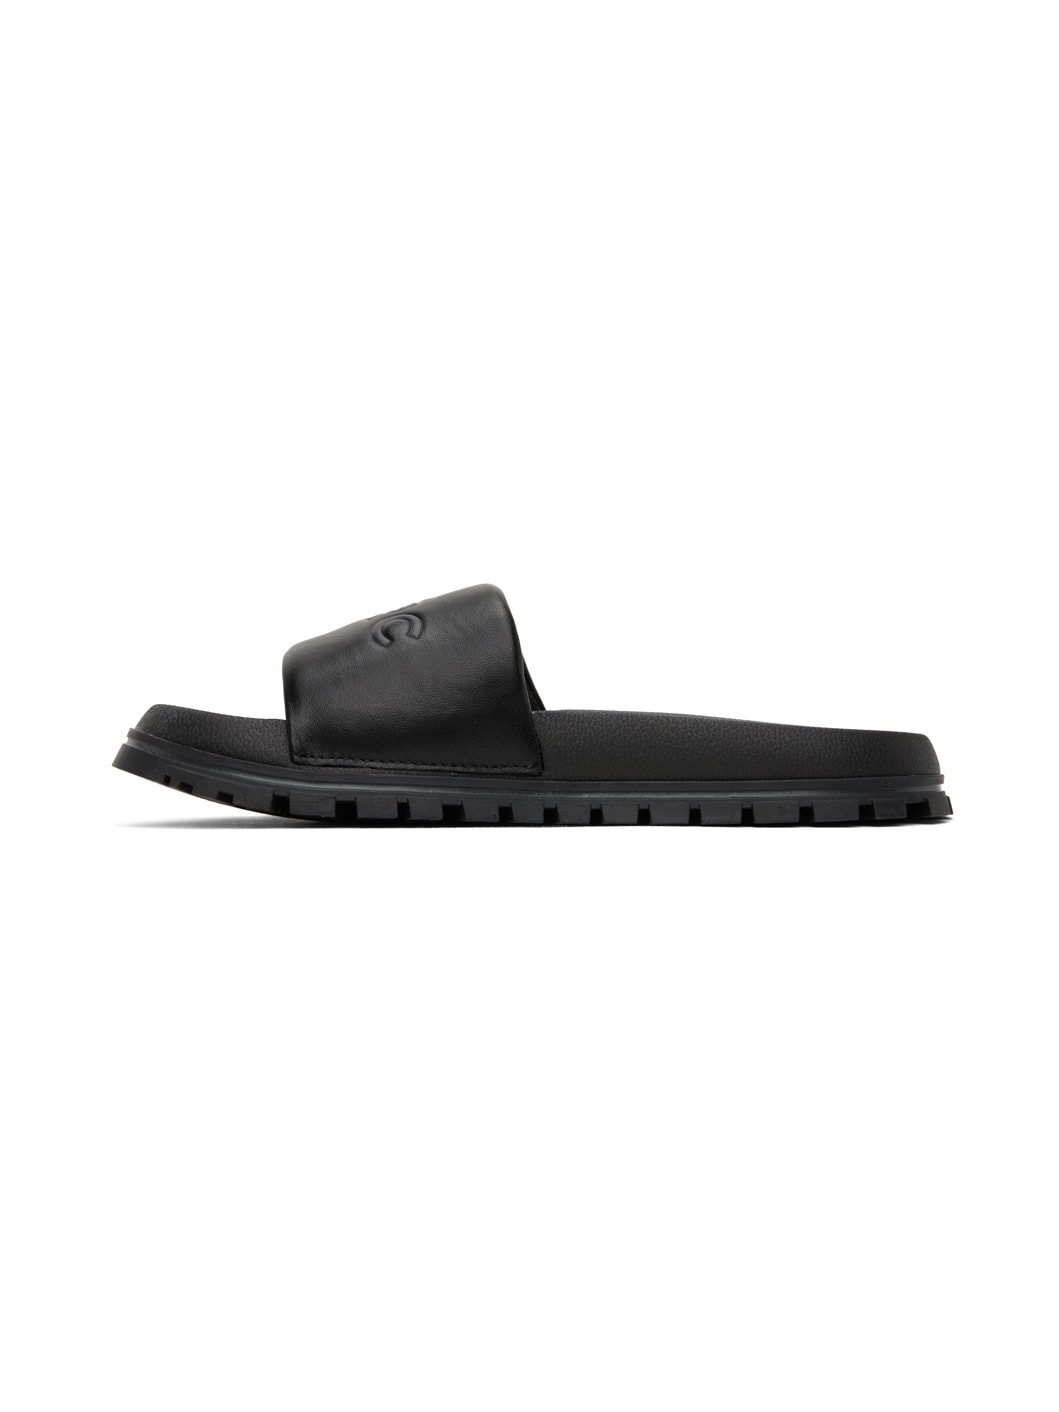 Black 'The Leather Slide' Sandals - 3